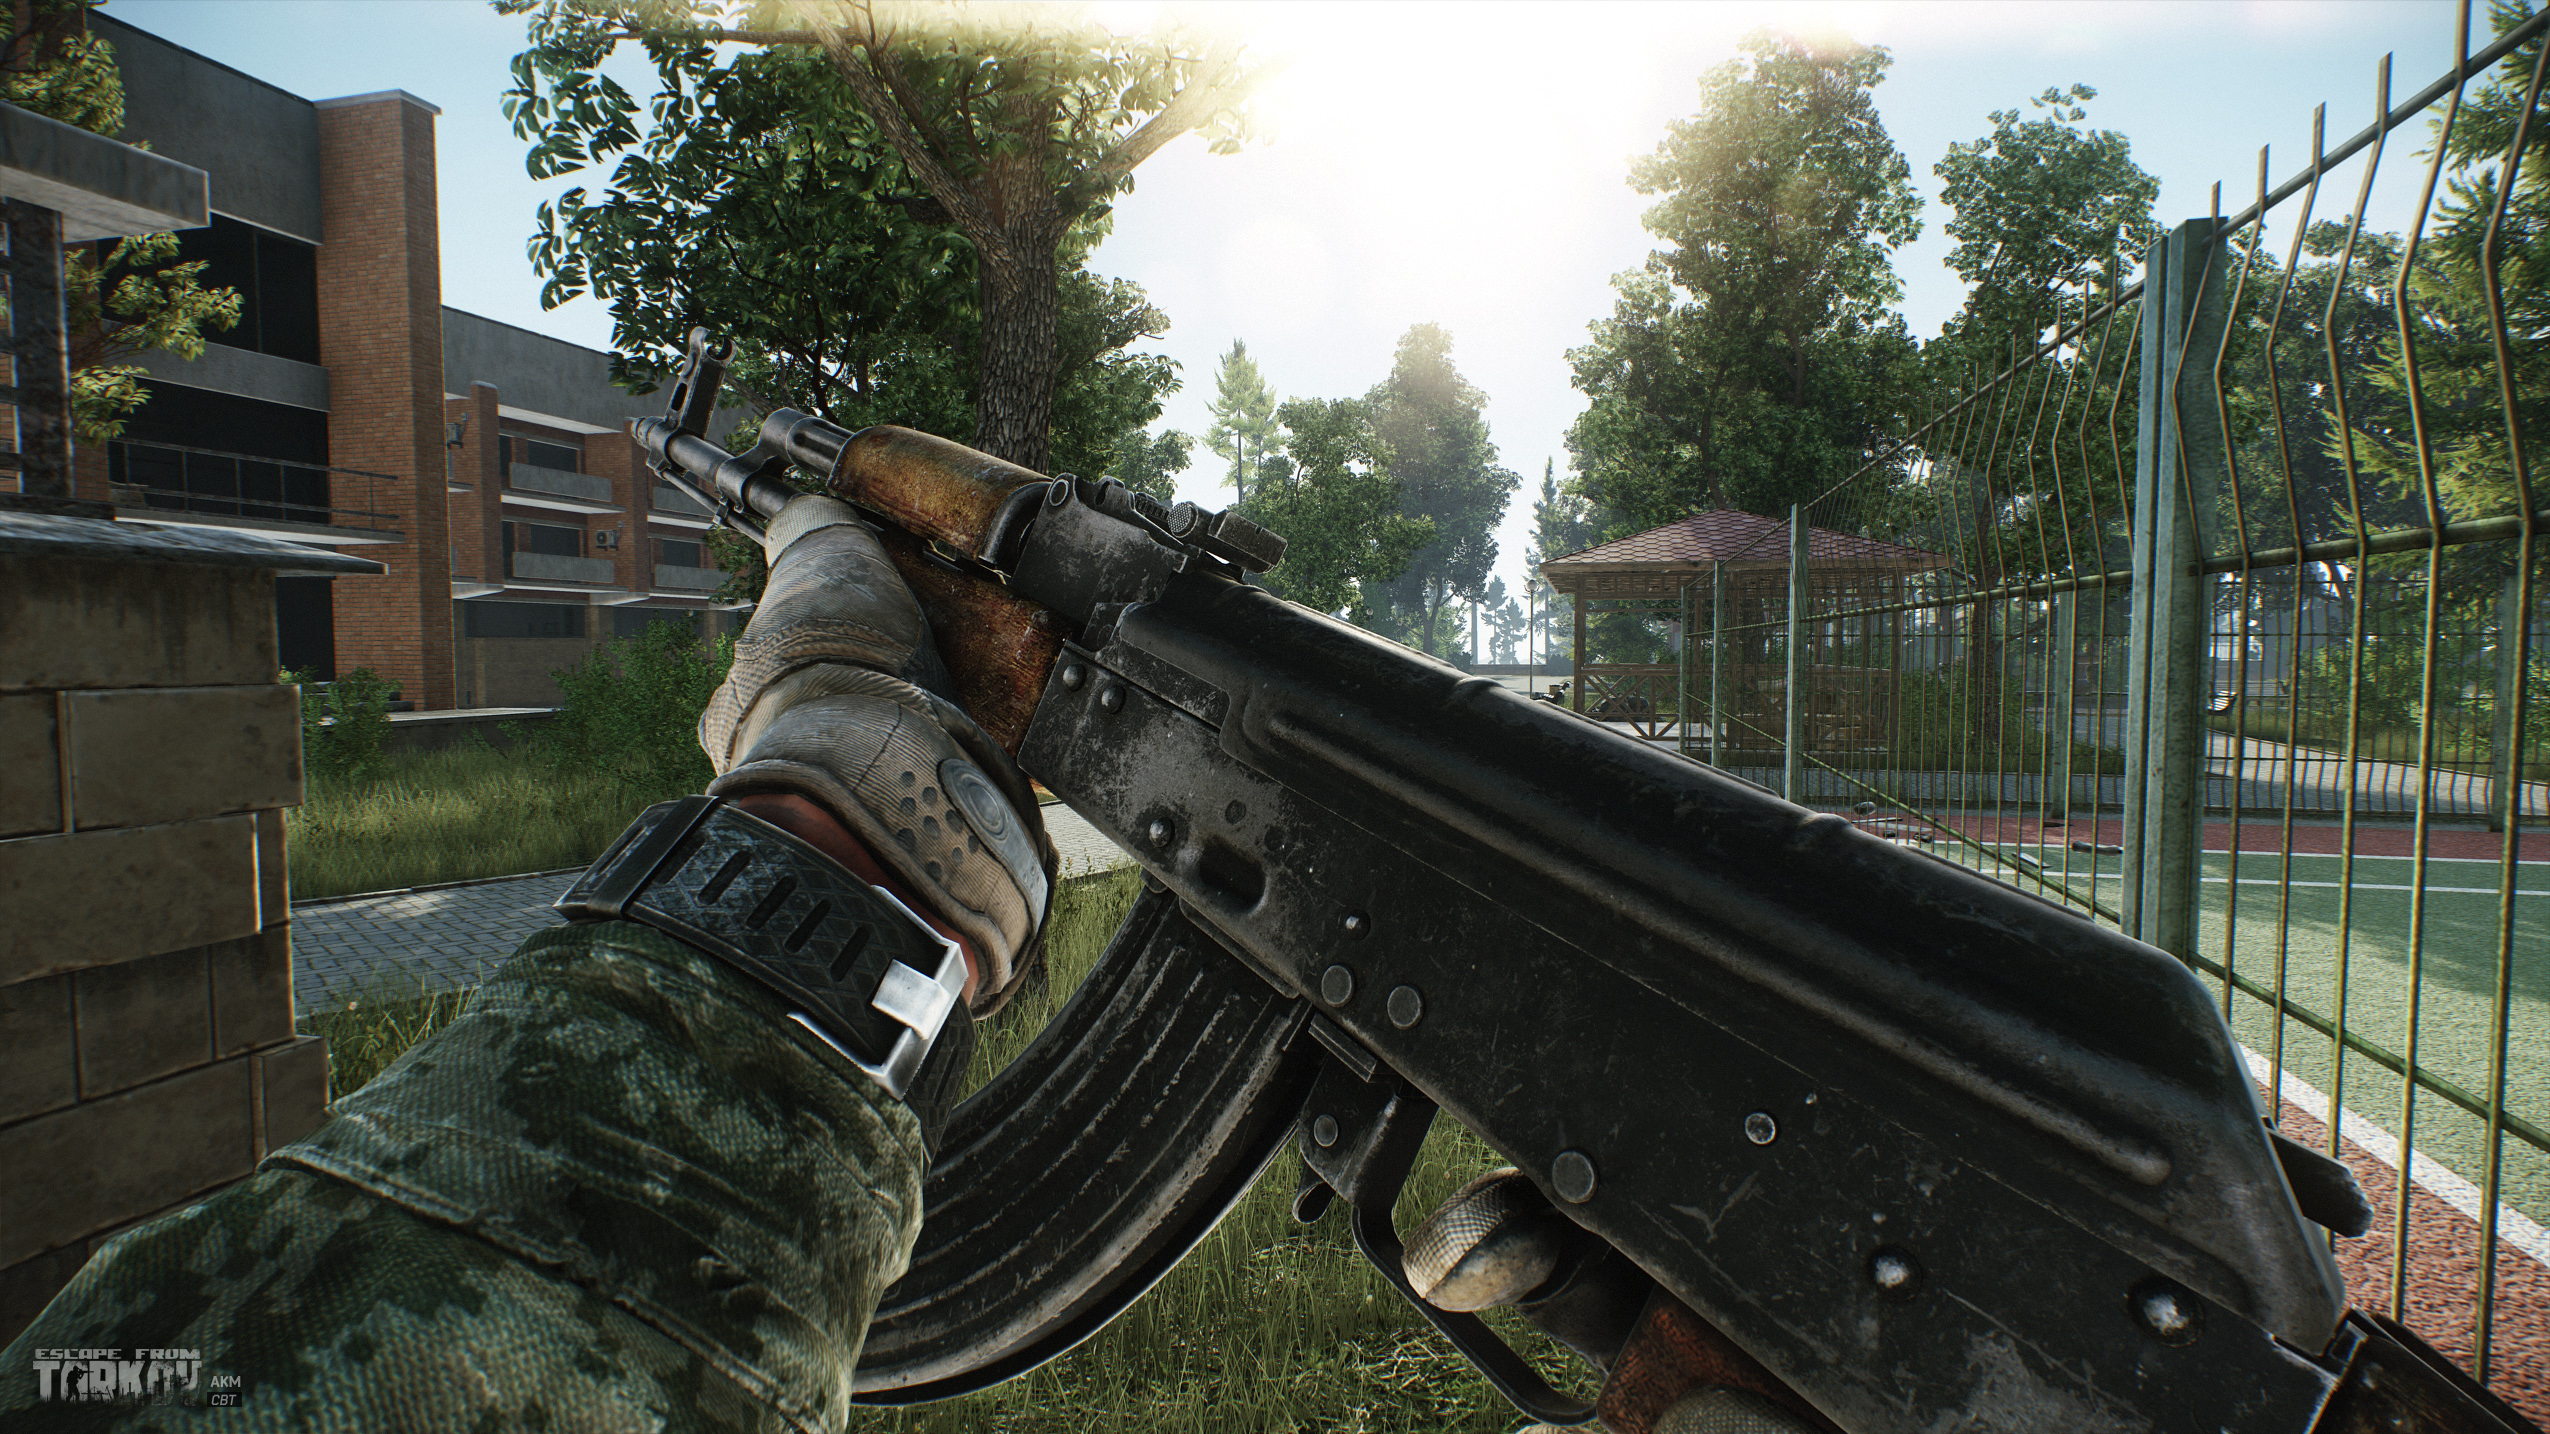 Escape from Tarkov Portiamo alla tua attenzione gli screenshot delle ultime aggiunte alla nostra gamma di armi  - 7.62mm AKM - 4